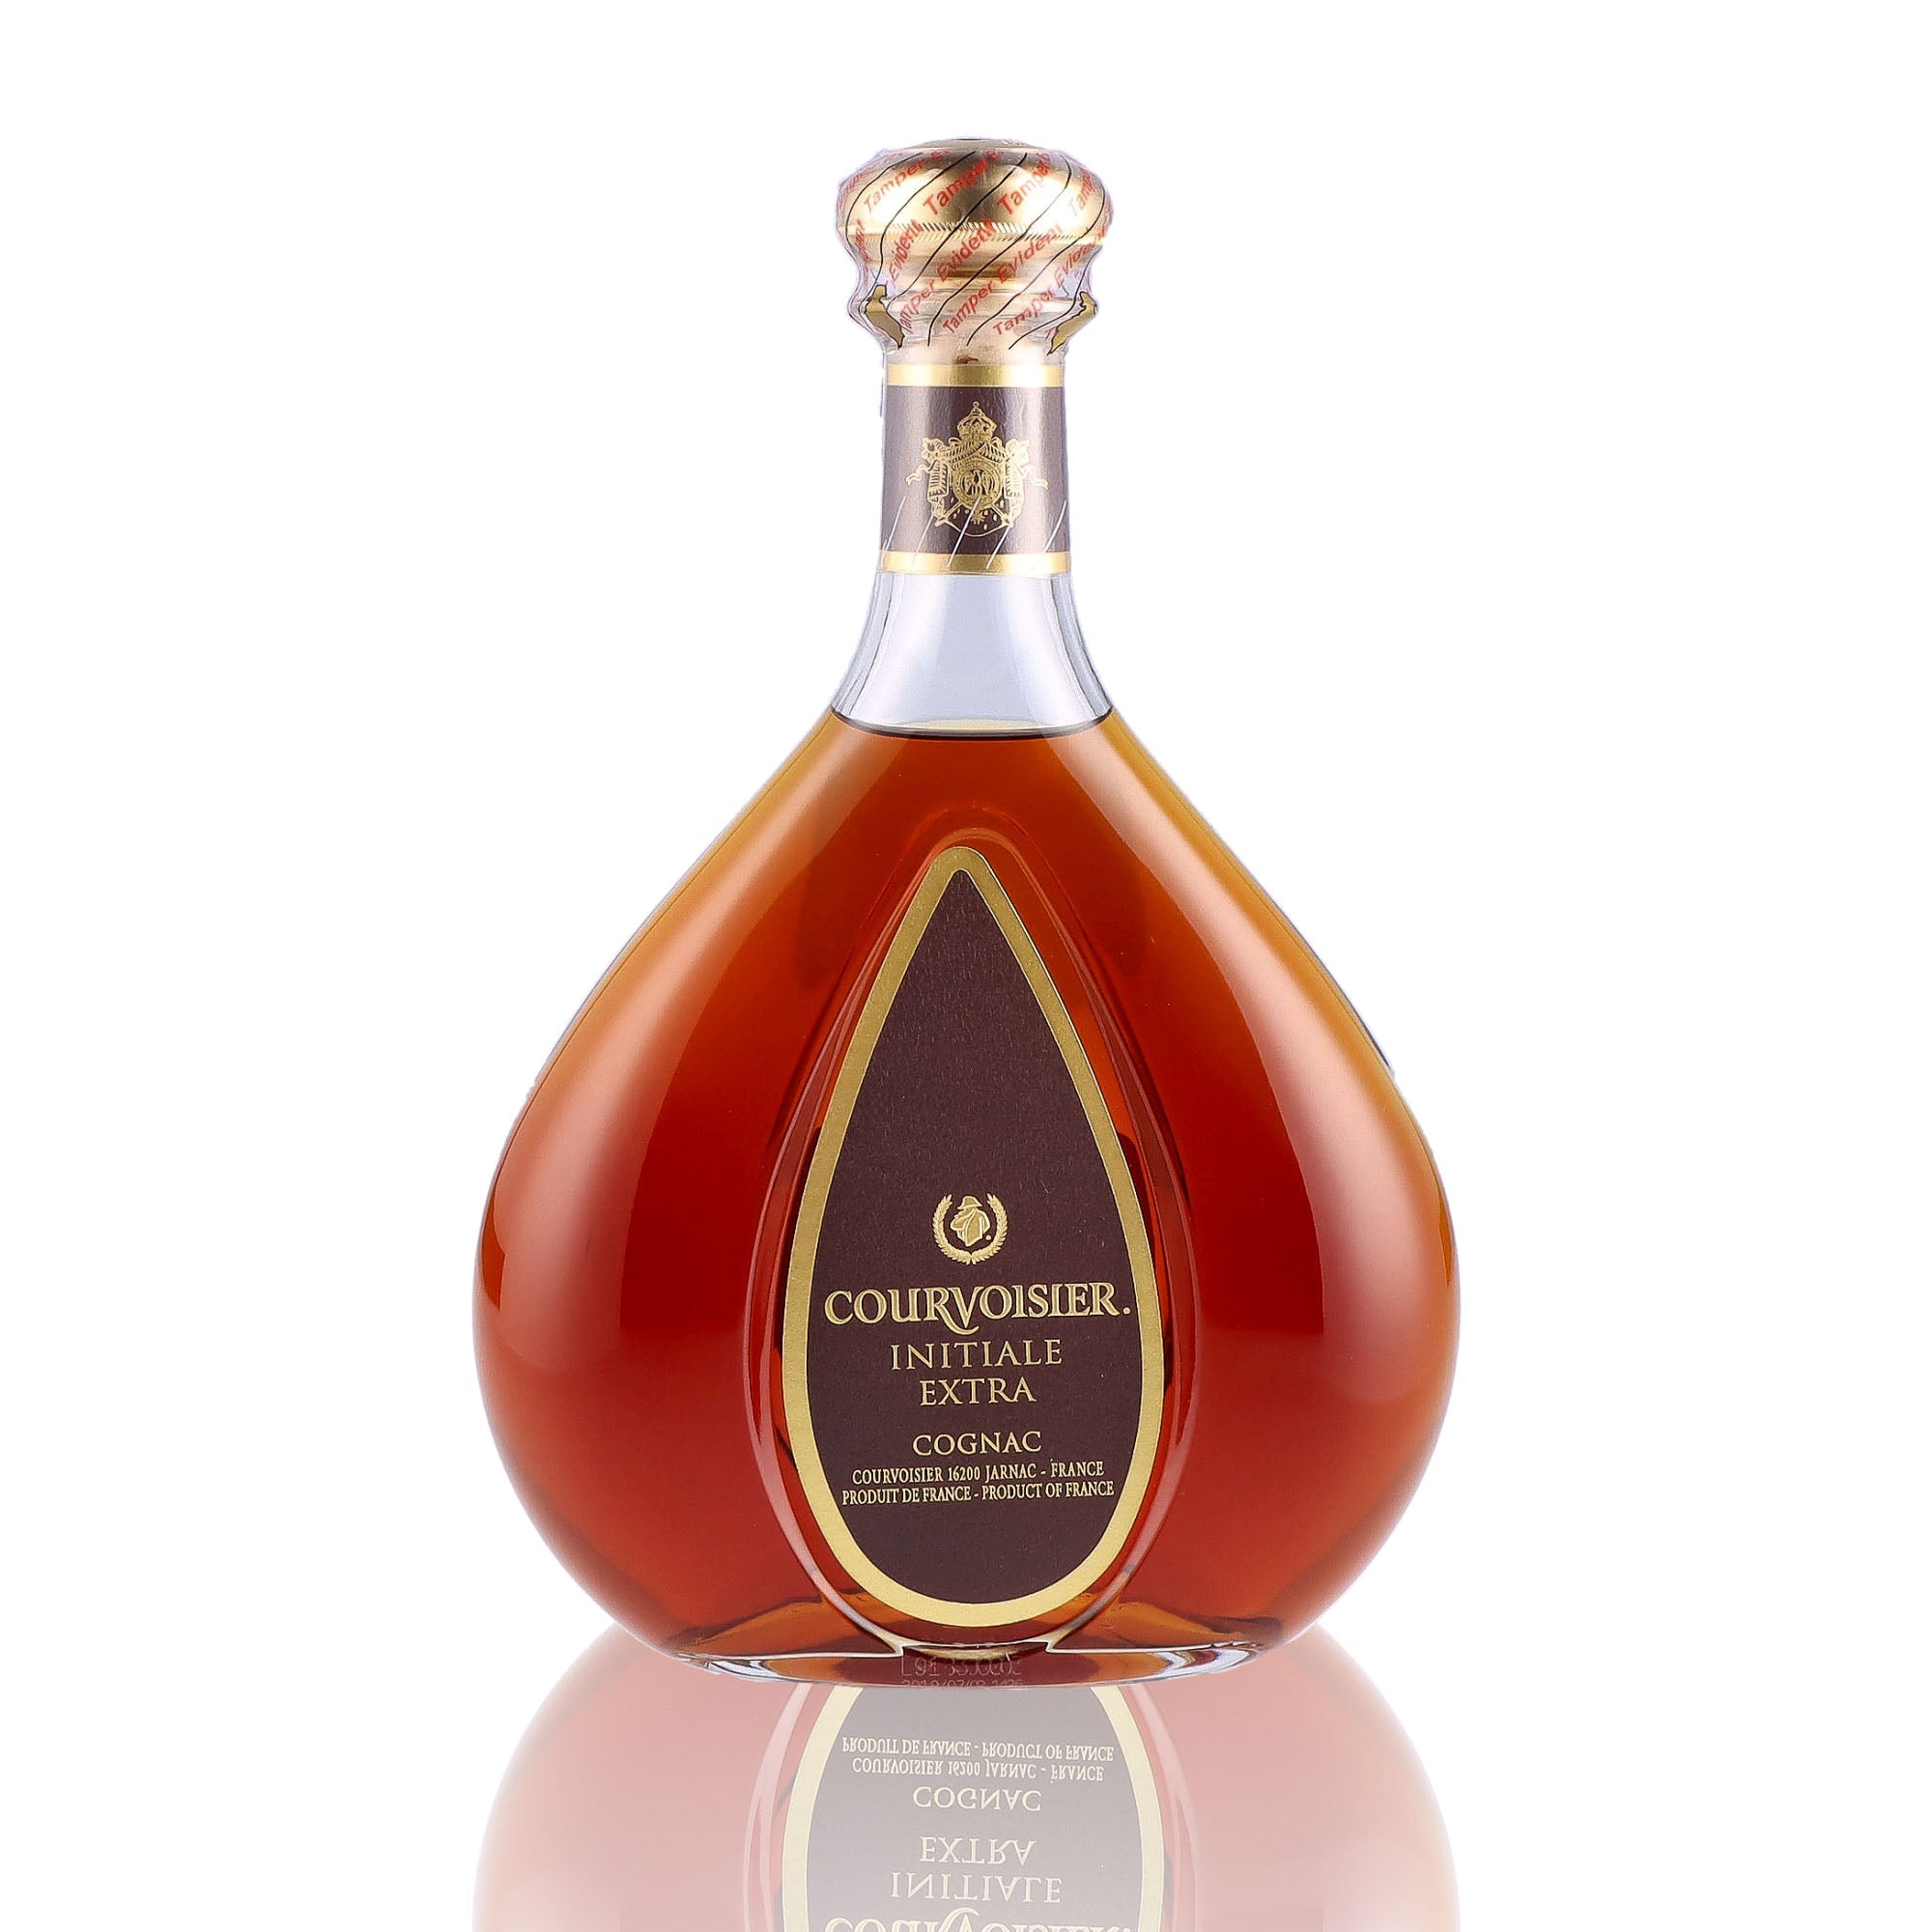 Une bouteille de Cognac, de la marque Courvoisier, nommée Initiale Extra.